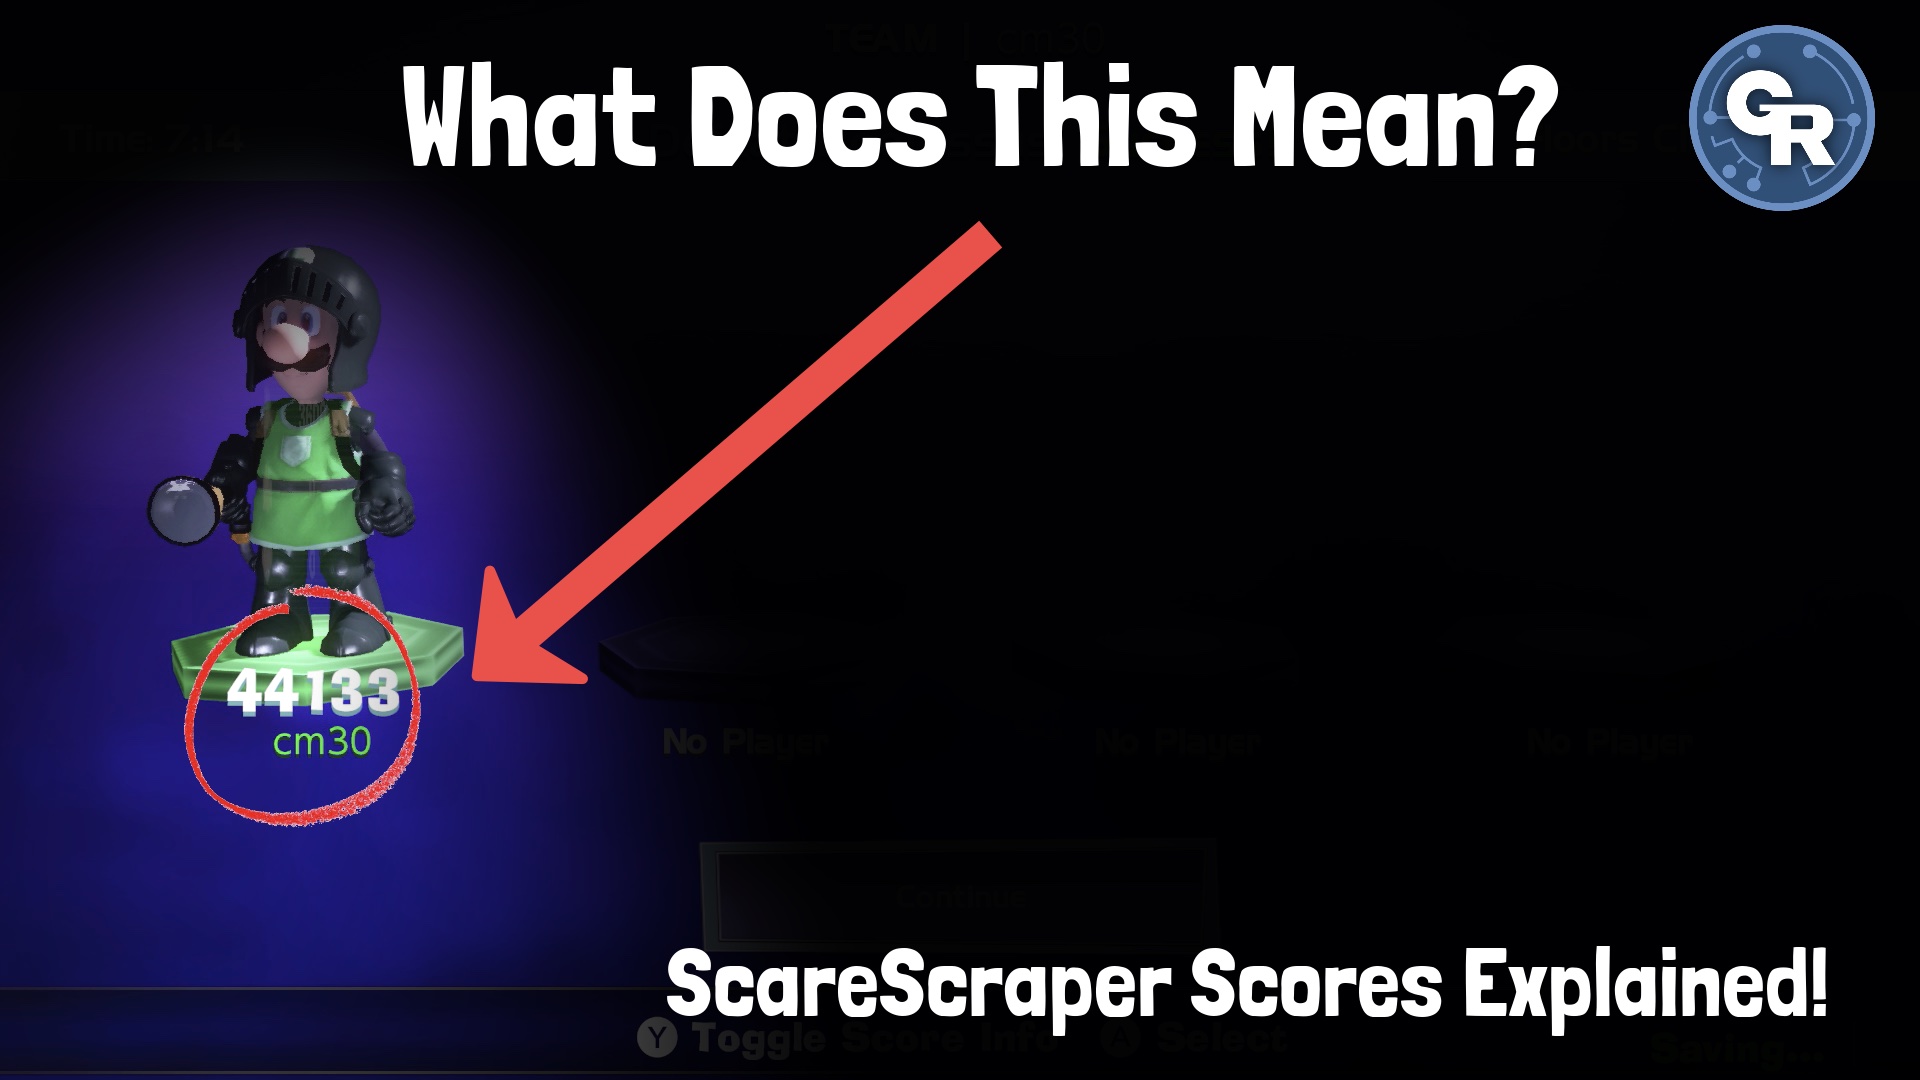 ScareScraper Scores Explained